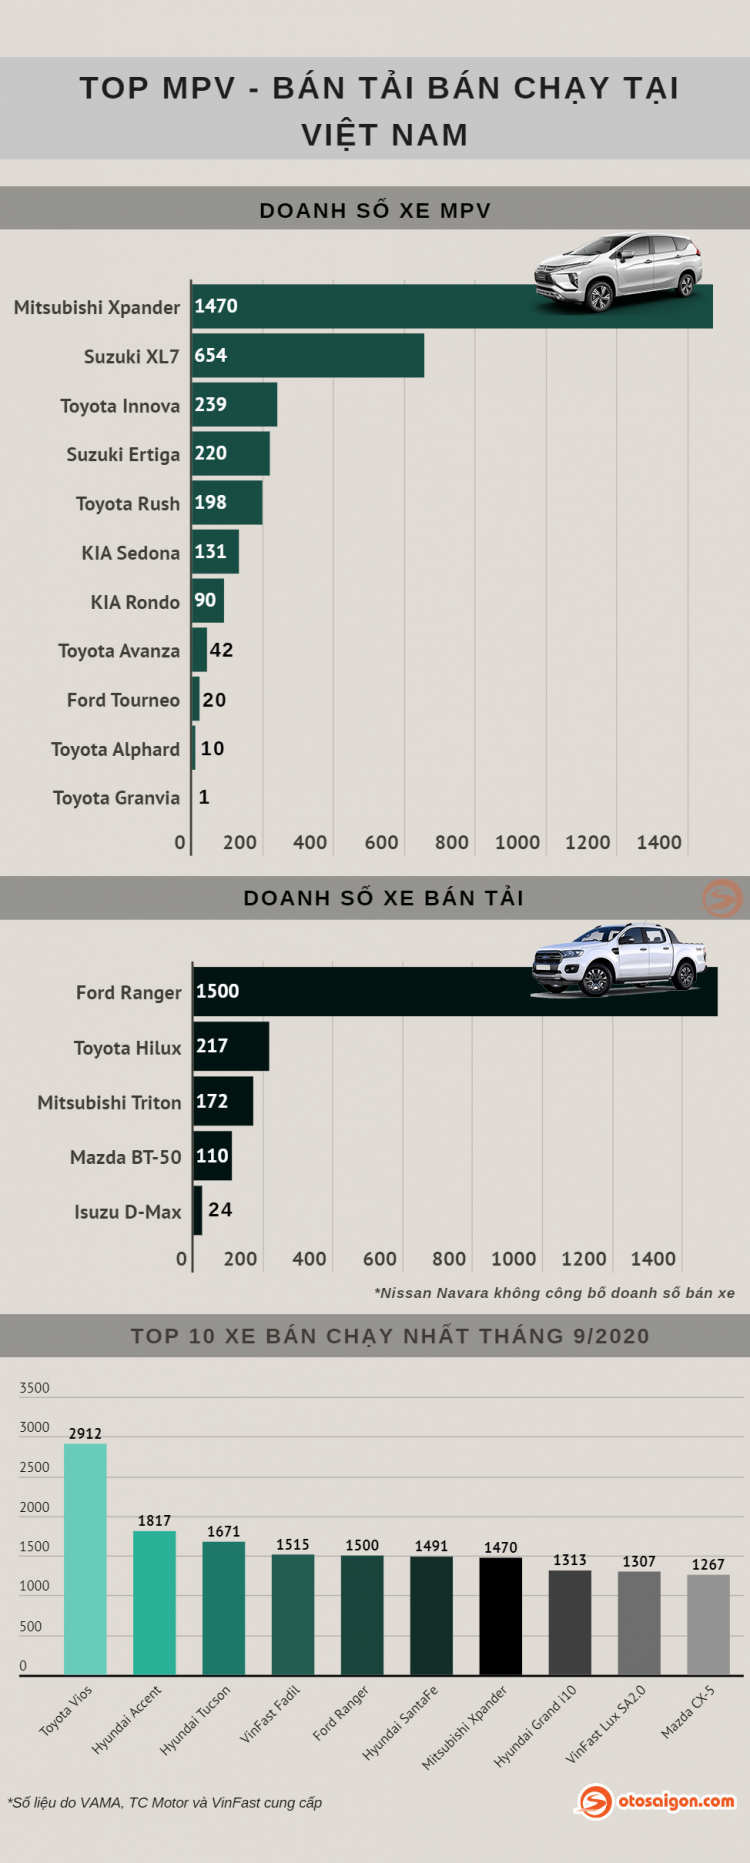 [Infographic] Top MPV/Bán tải bán chạy tháng 9/2020: Doanh số Toyota Hilux 2020 chưa như kỳ vọng